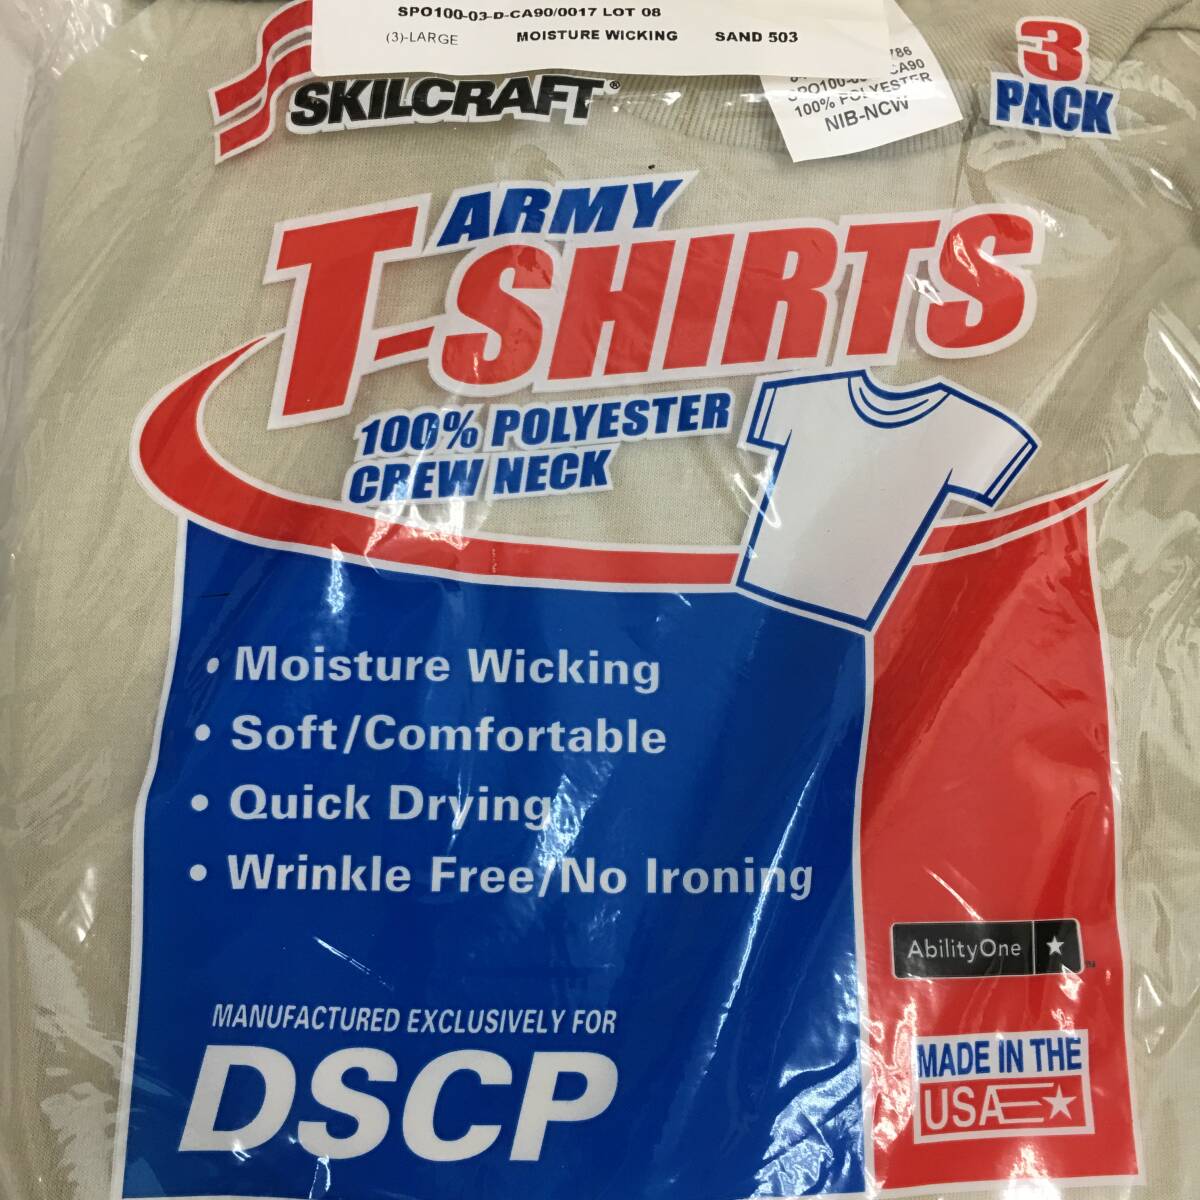 未使用品 DSCP アーミーTシャツ 3枚入り ラージサイズ Lサイズ デザートサンド SKILCRAFT 米軍放出品 管理Bの画像4